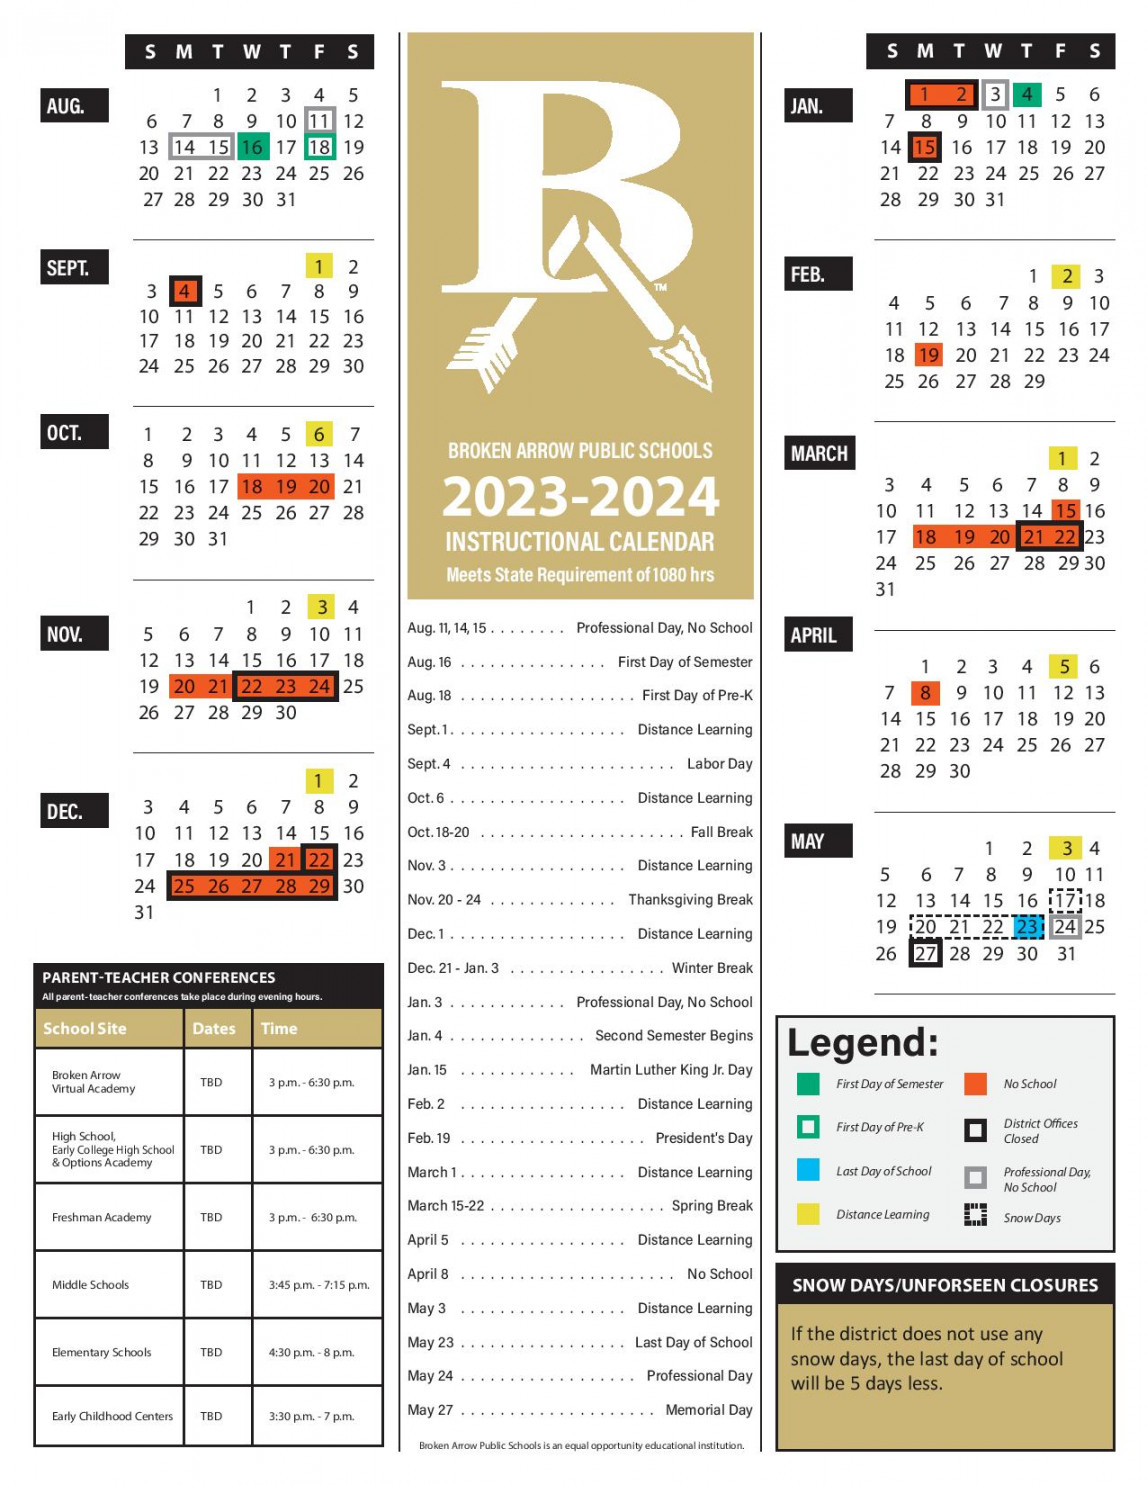 Broken Arrow Public Schools Calendar - in PDF